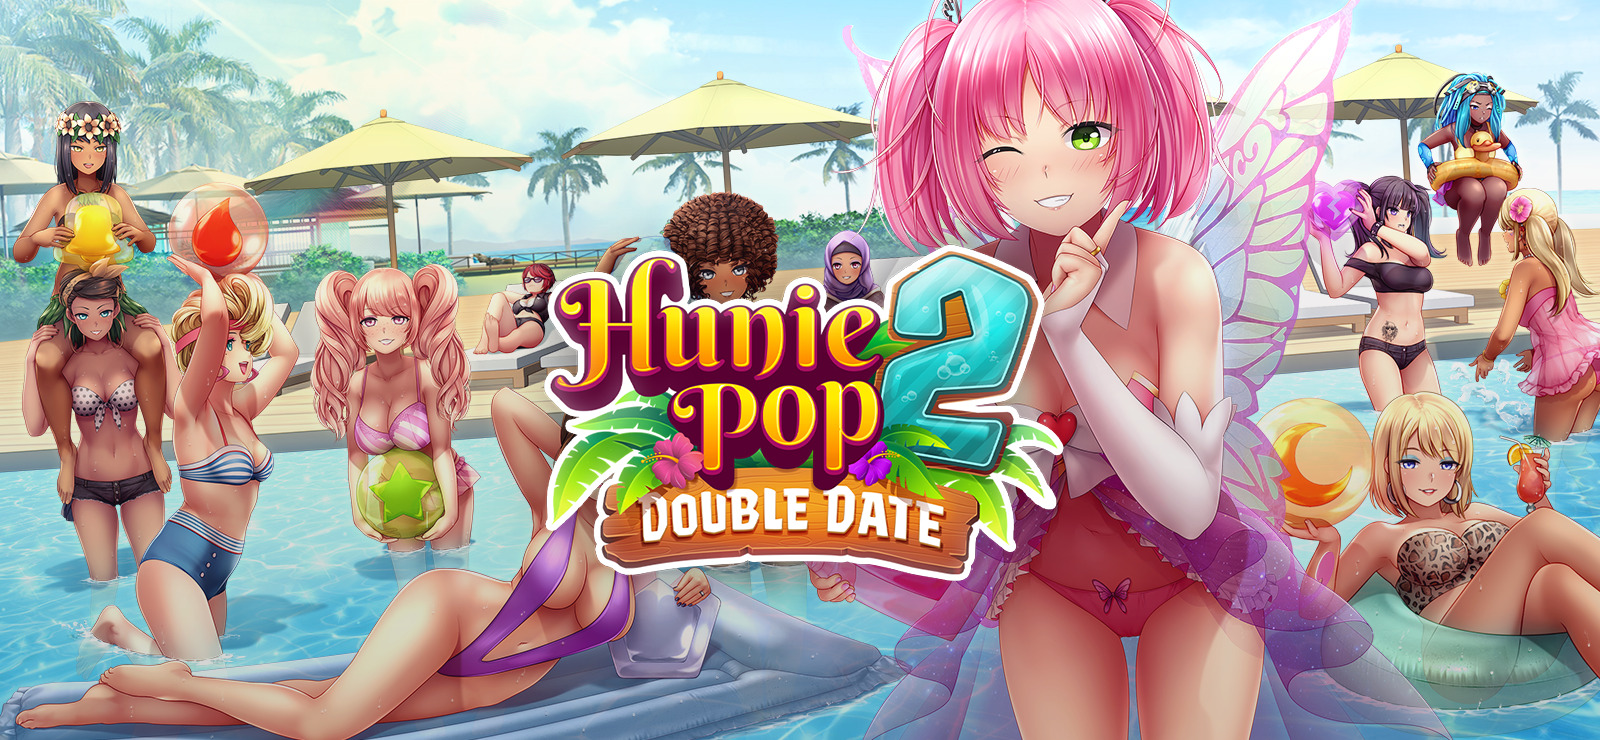 Huniepop 2 double date